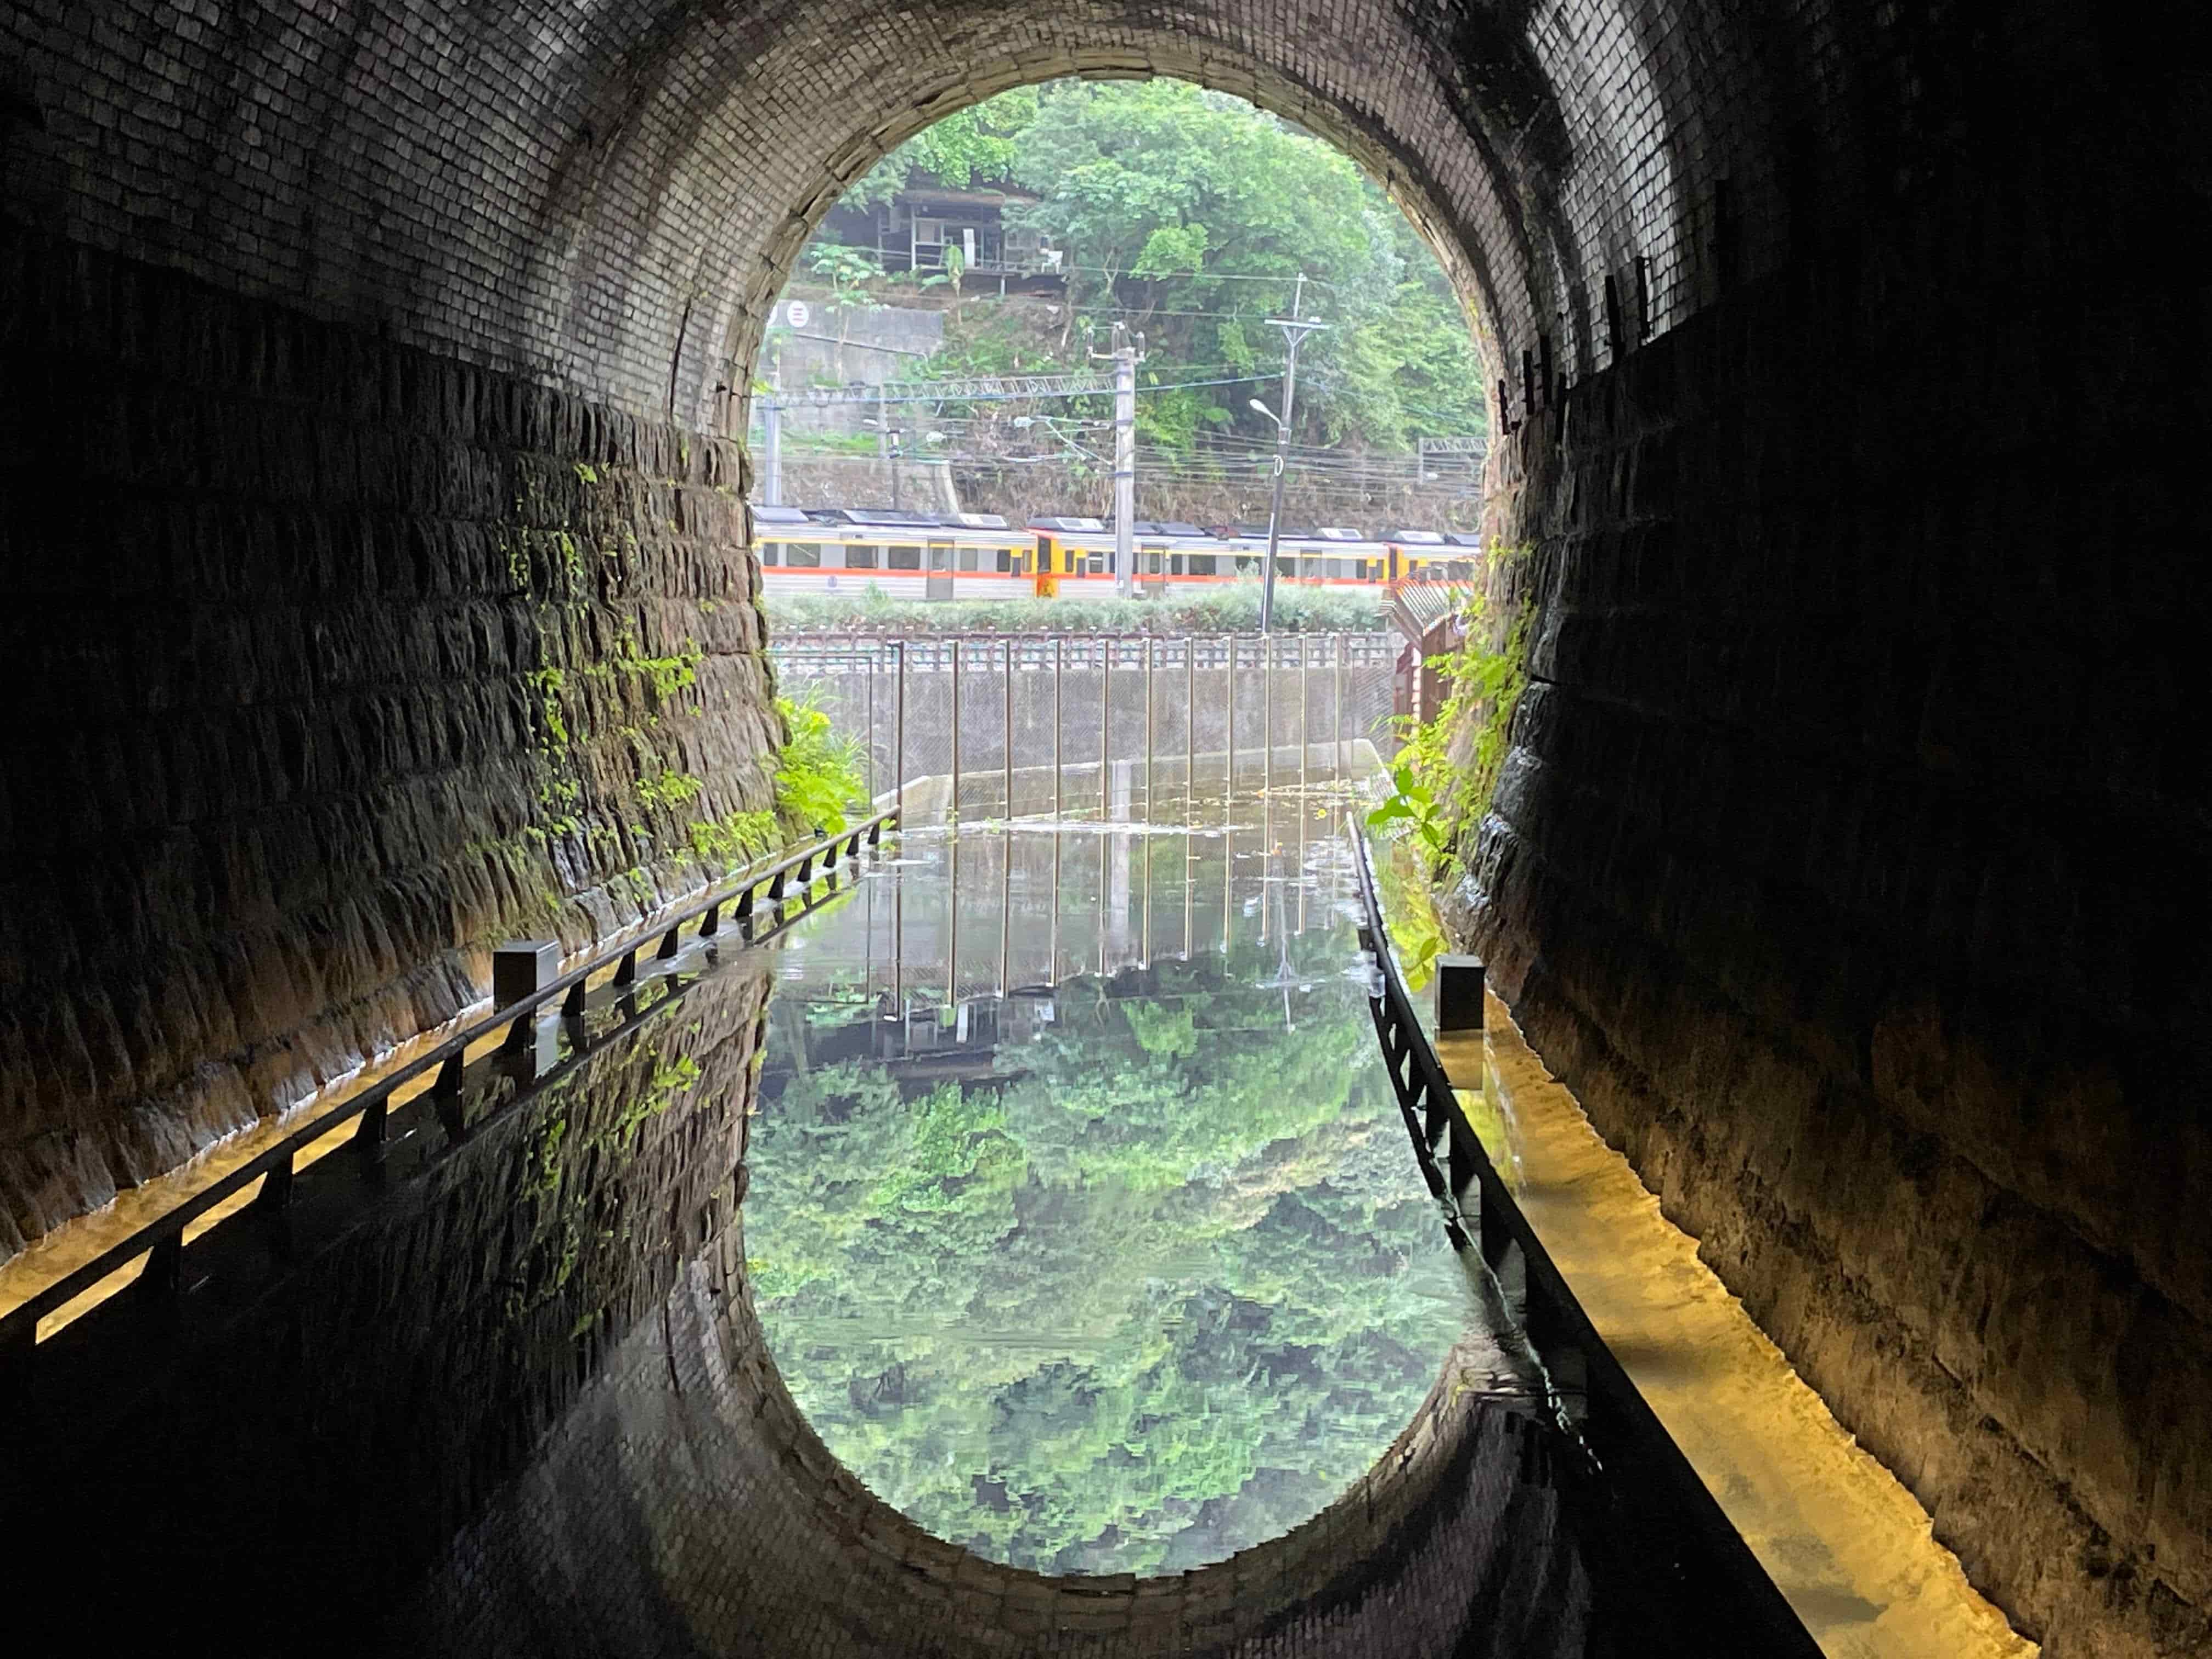 在三瓜子隧道設計的鏡面水池反射出翠綠山色及火車行經影像。